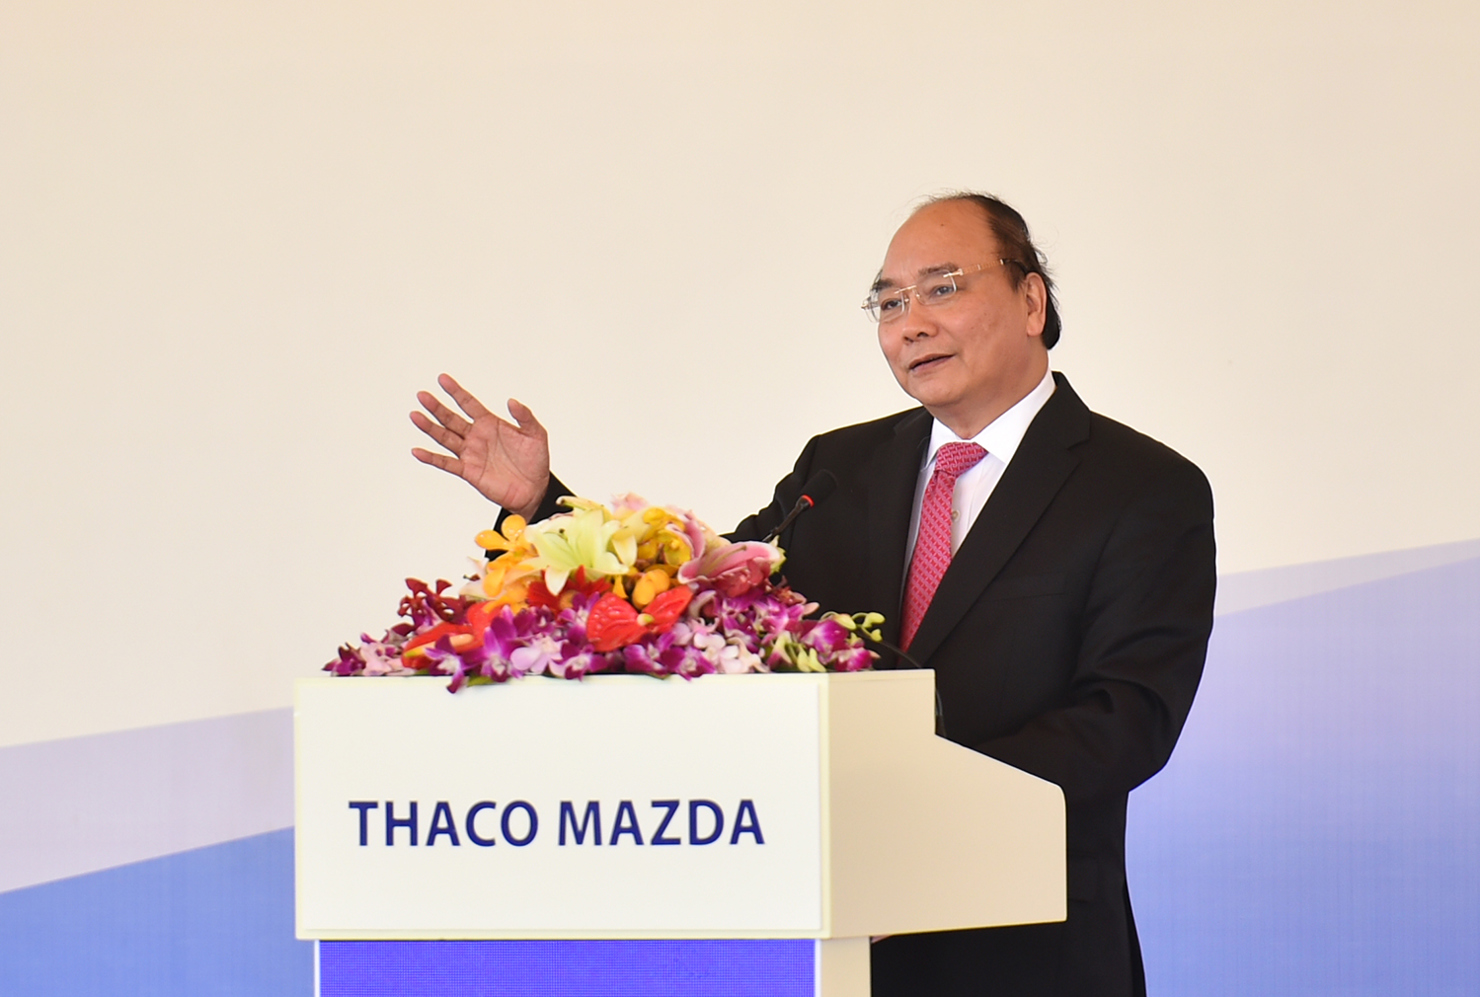 Thủ tướng Nguyễn Xuân Phúc đánh giá cao việc THACO hợp tác với Mazda để sản xuất ô tô tại Việt Nam theo công nghệ hiện đại. Ảnh: VGP/Quang Hiếu